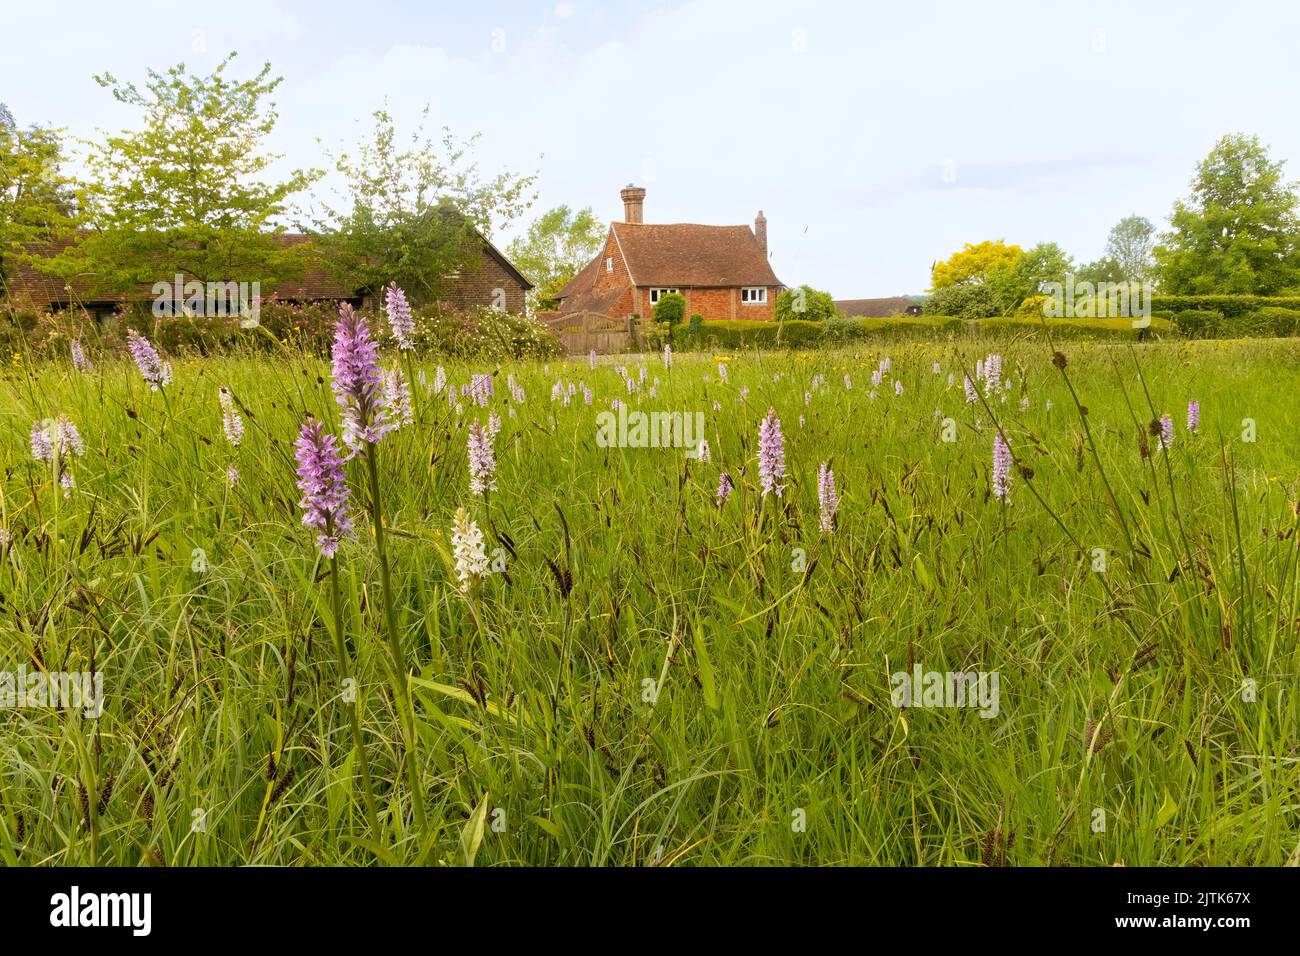 Schokoladenbox Dorf in Kent, Großbritannien, mit Orchideen im Vordergrund und Hütte im Hintergrund. Stockfoto